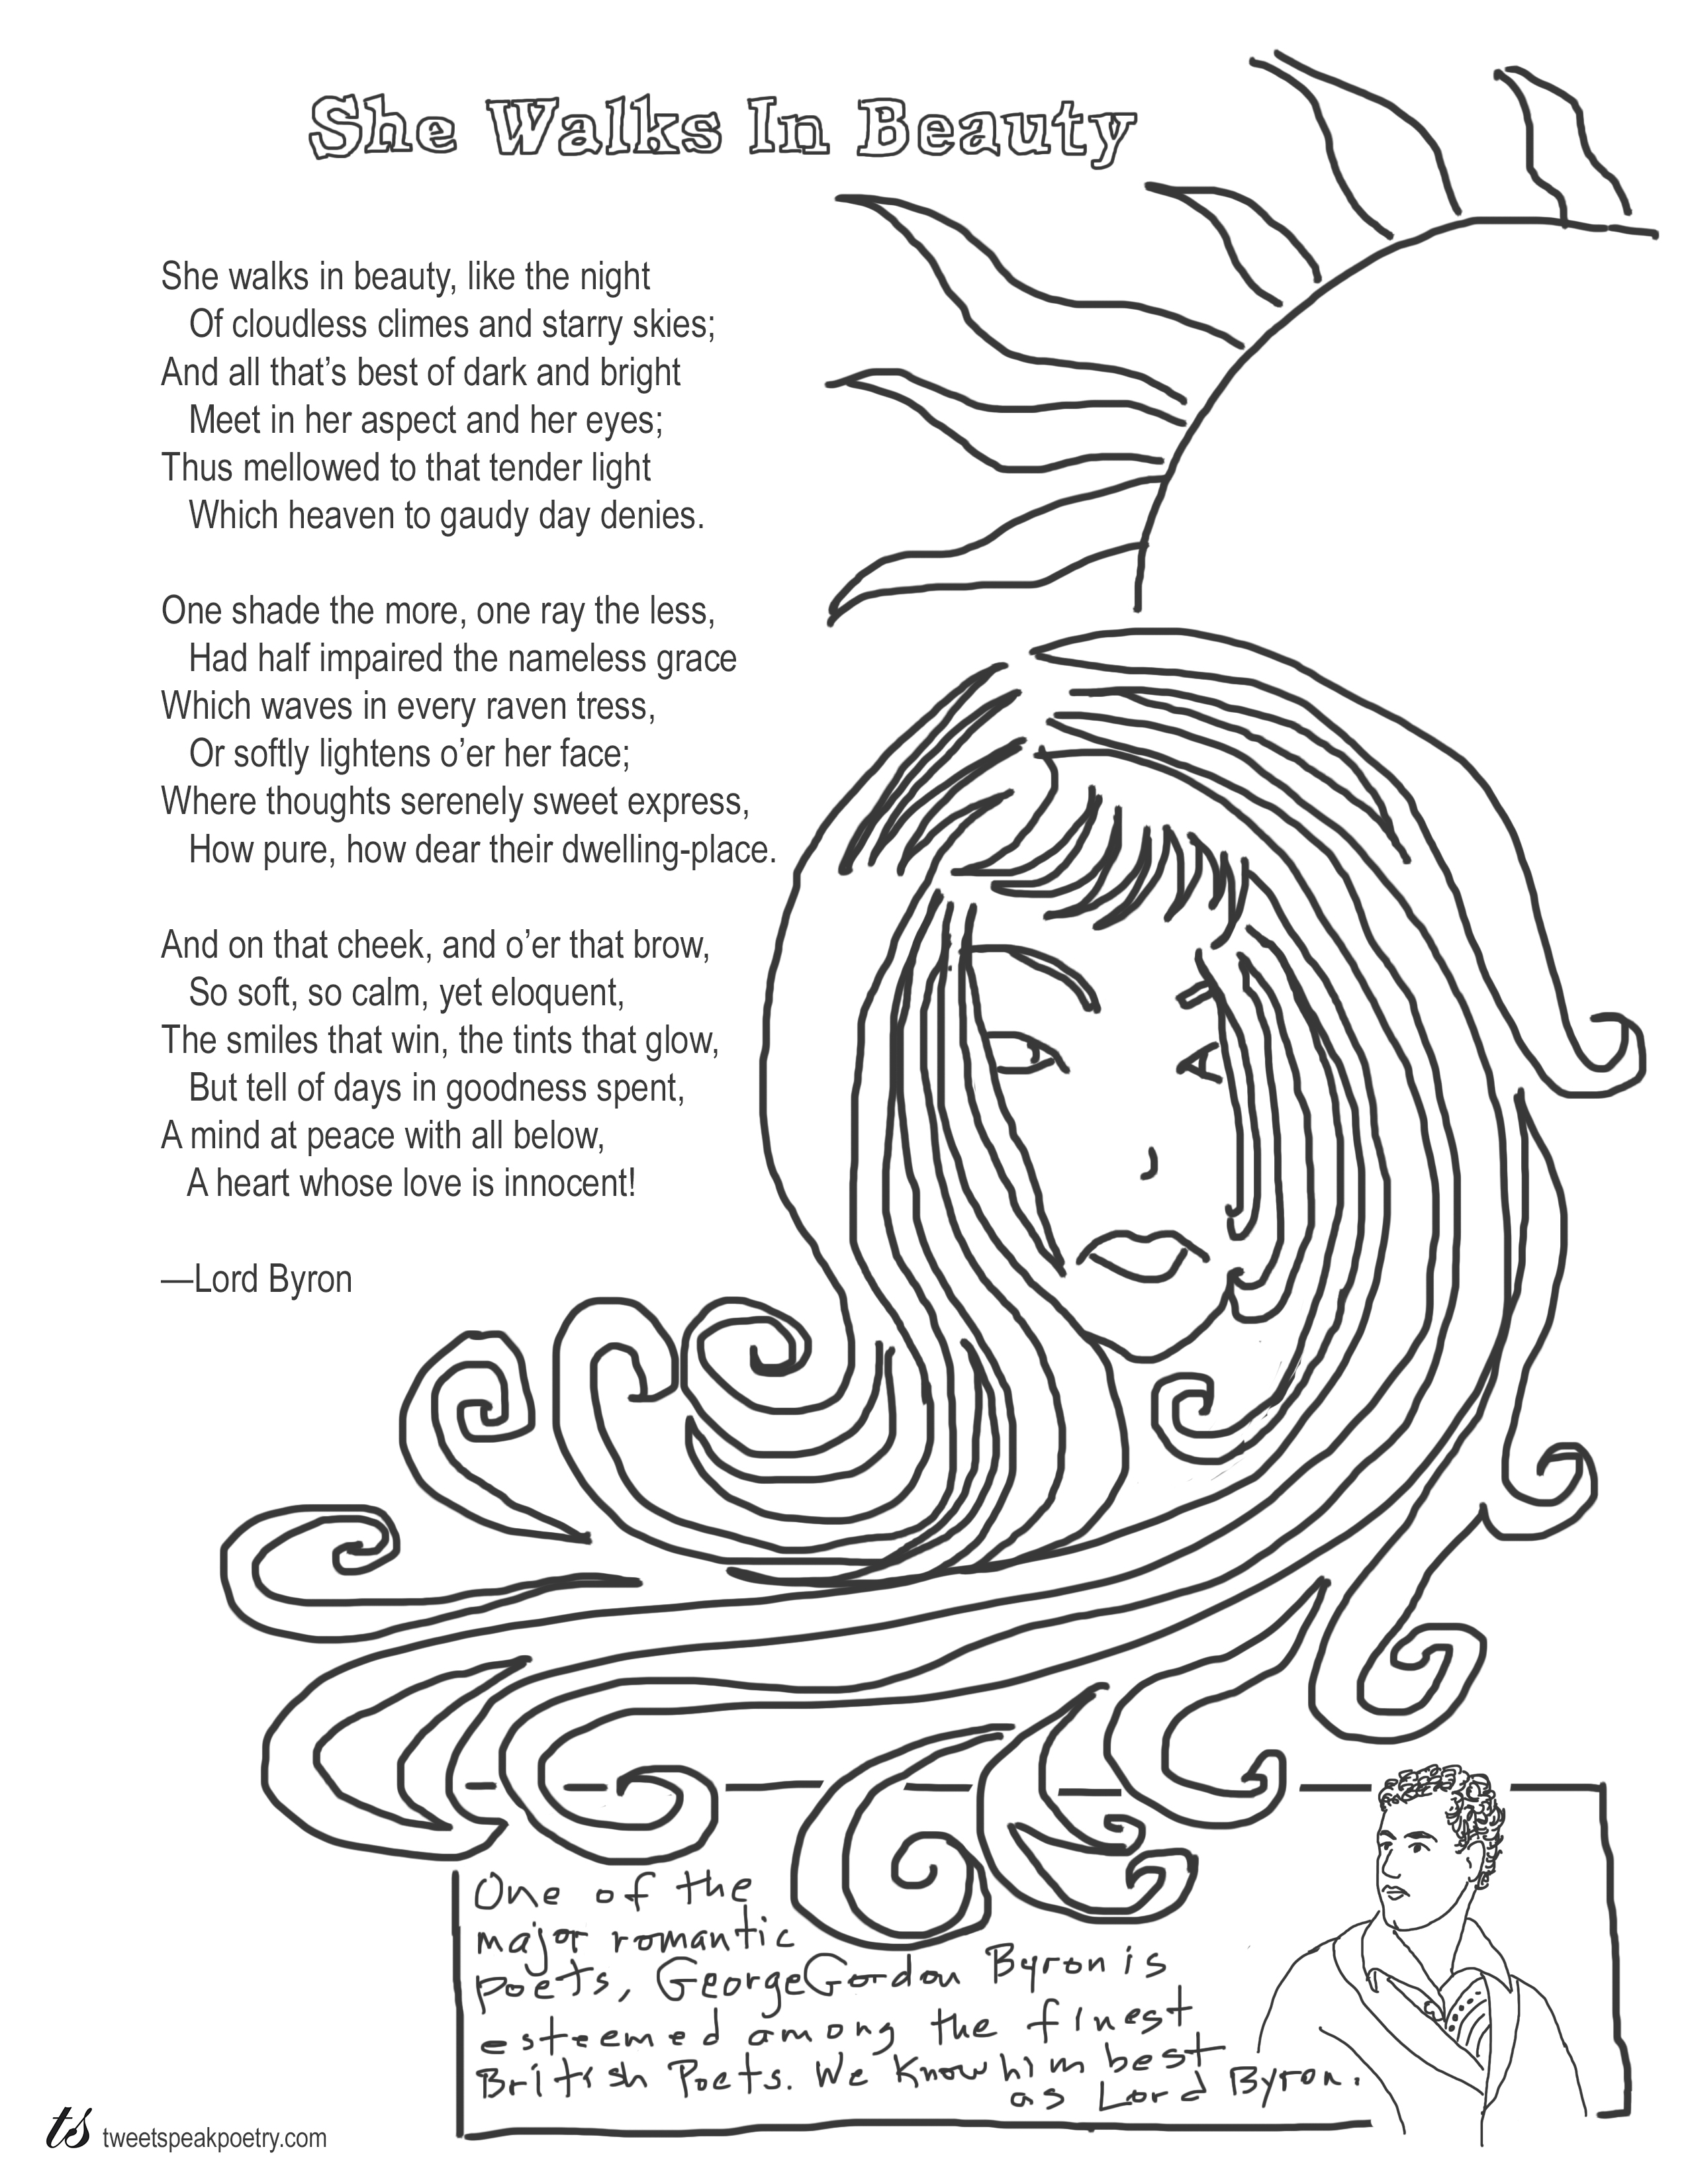 She Walks in Beauty by Lord Byron Coloring Page Poem - Tweetspeak Poetry